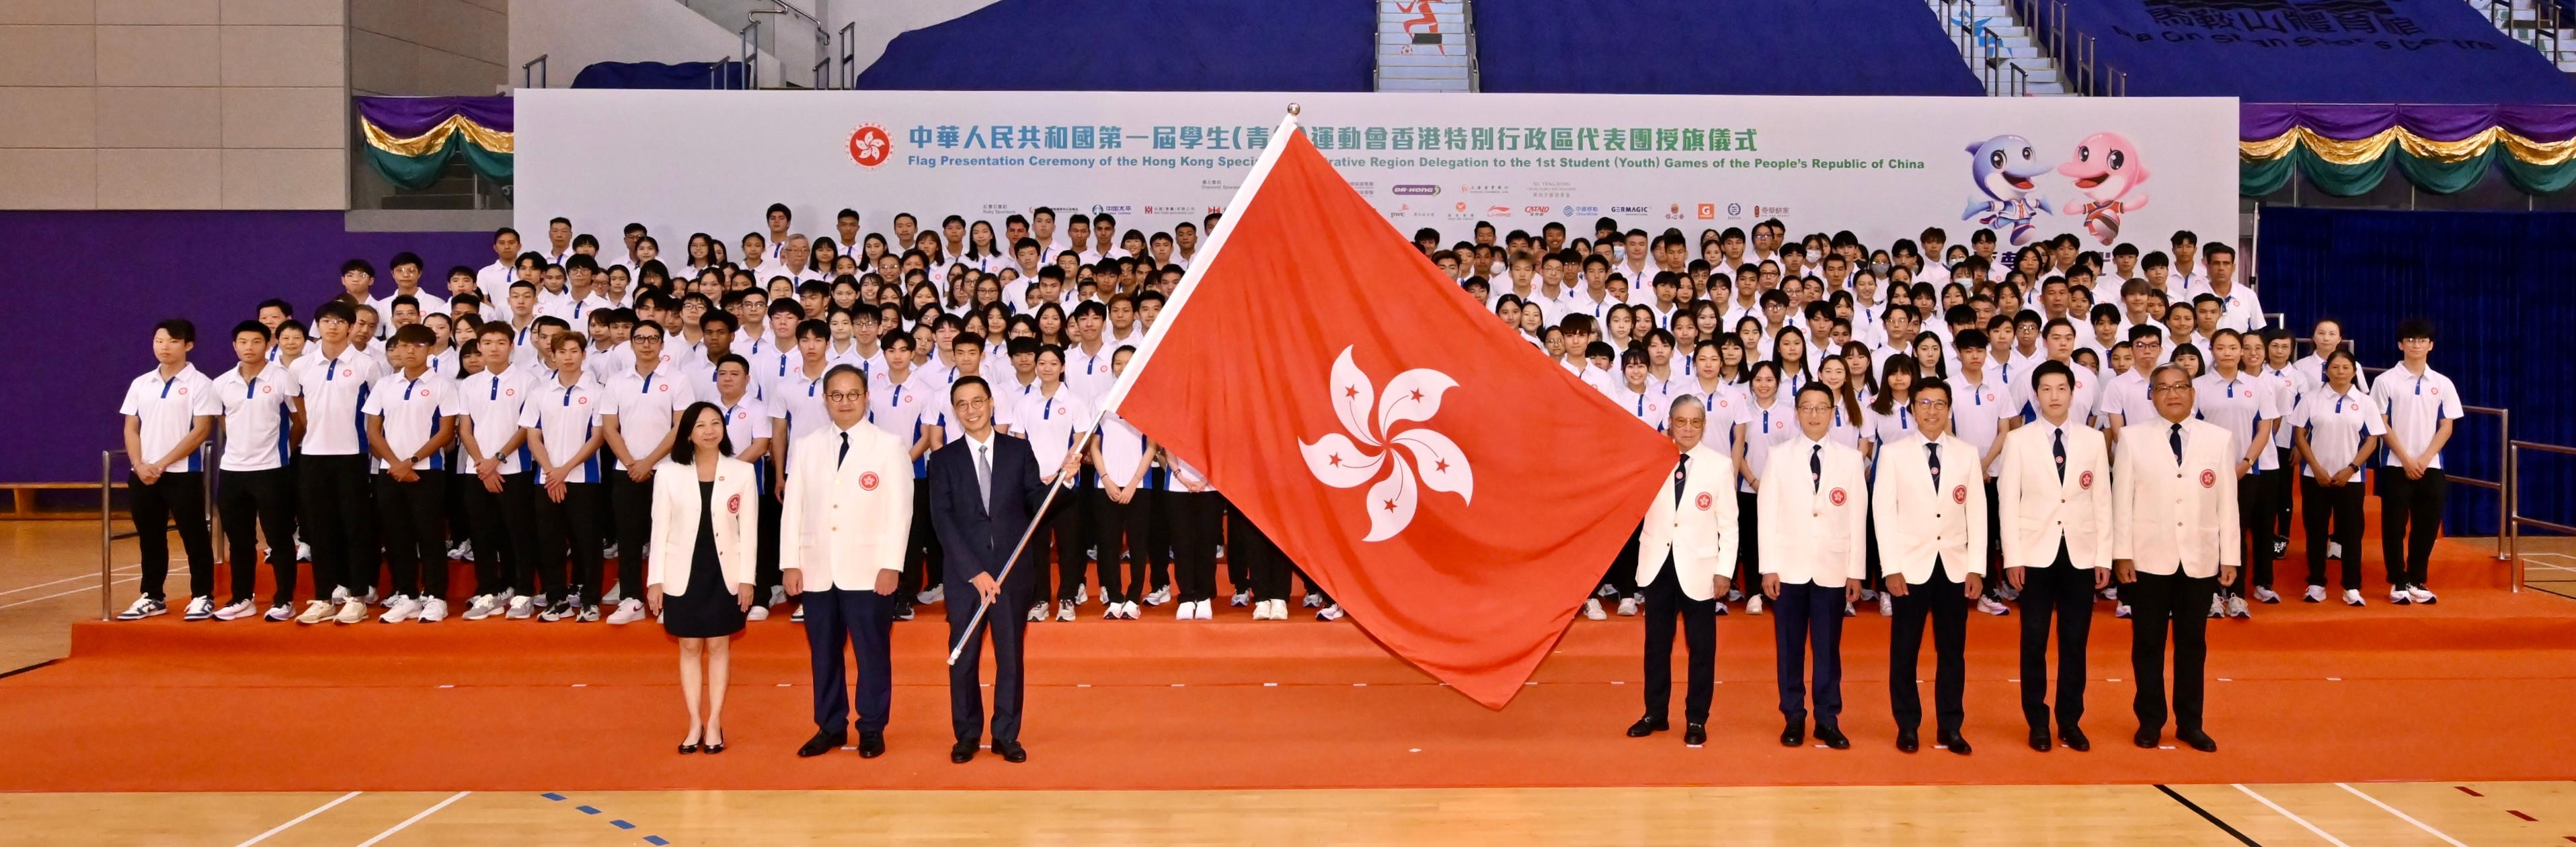 楊潤雄（前排左三）把香港特區區旗授予中國香港體育協會暨奧林匹克委員會會長兼代表團籌備委員會主席霍震霆（前排右五）。